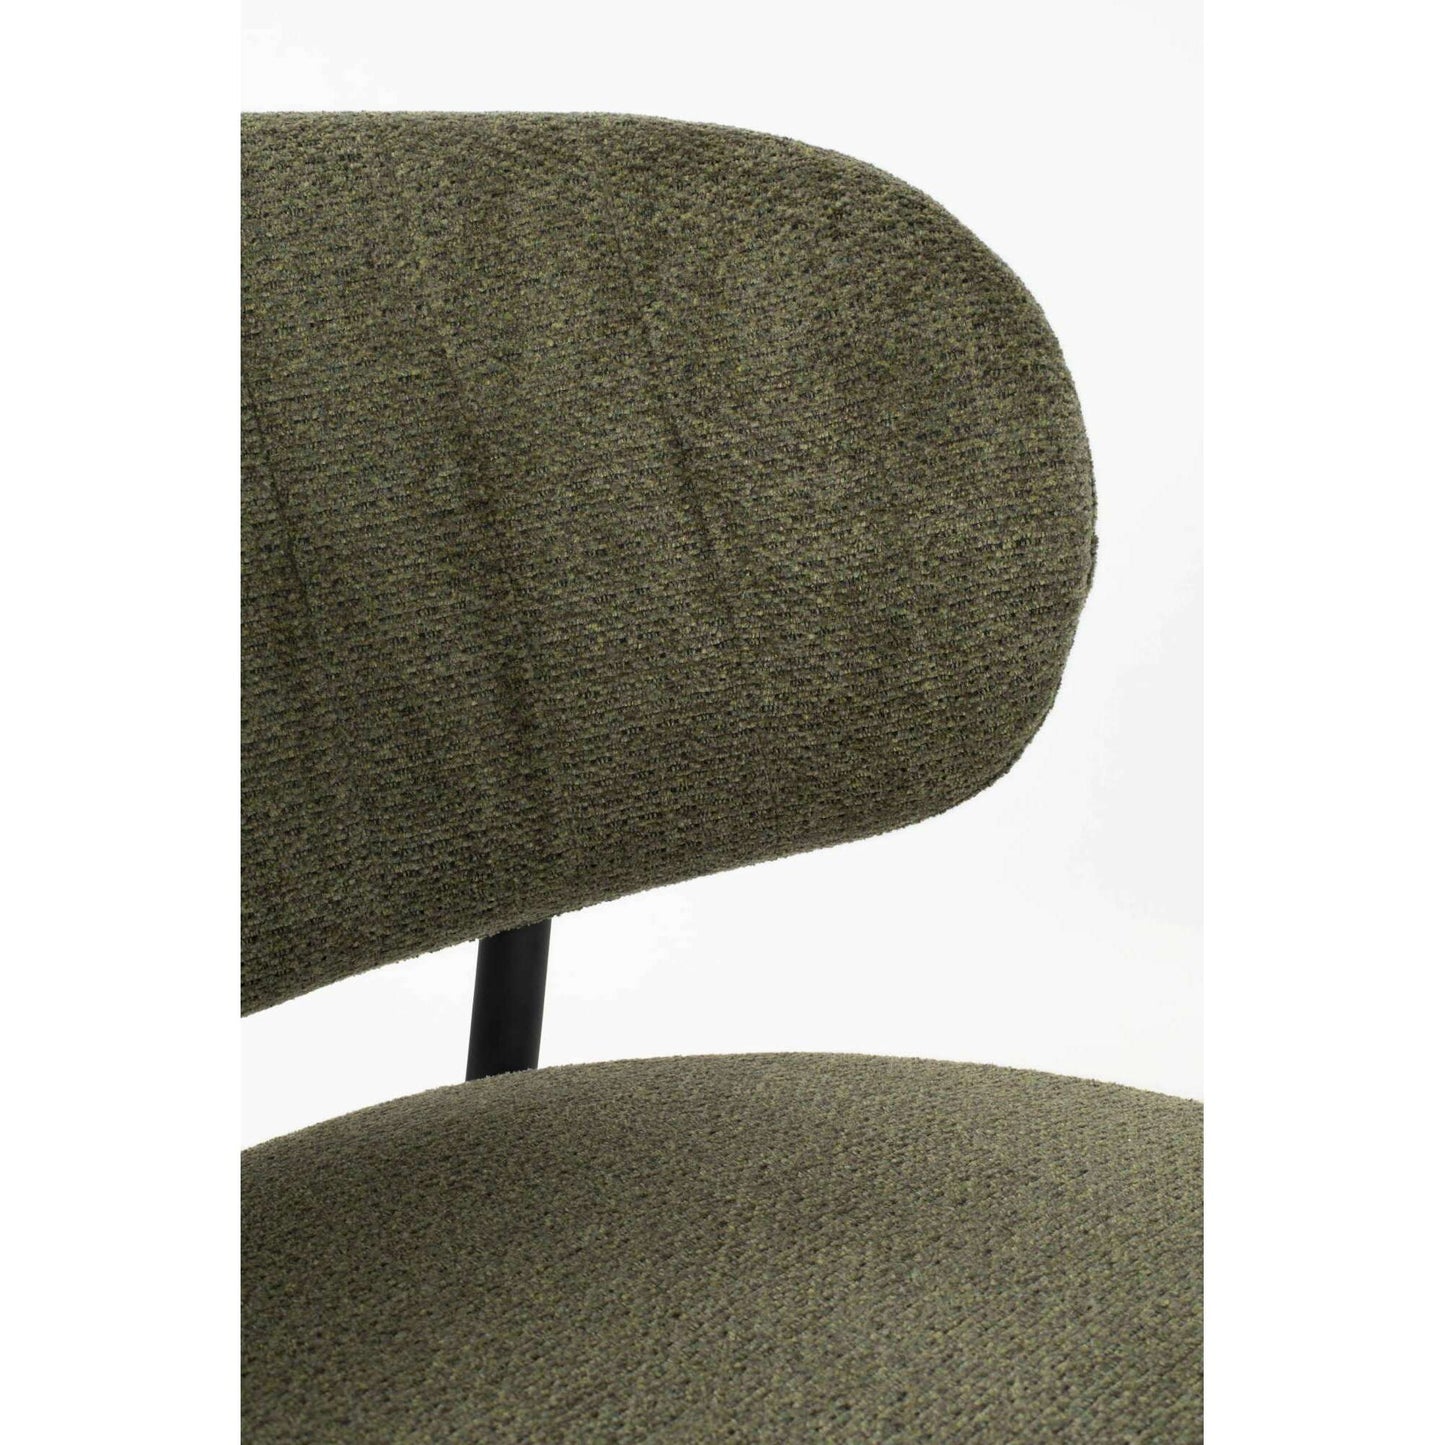 Staerkk Sanne fauteuil groen/grijs